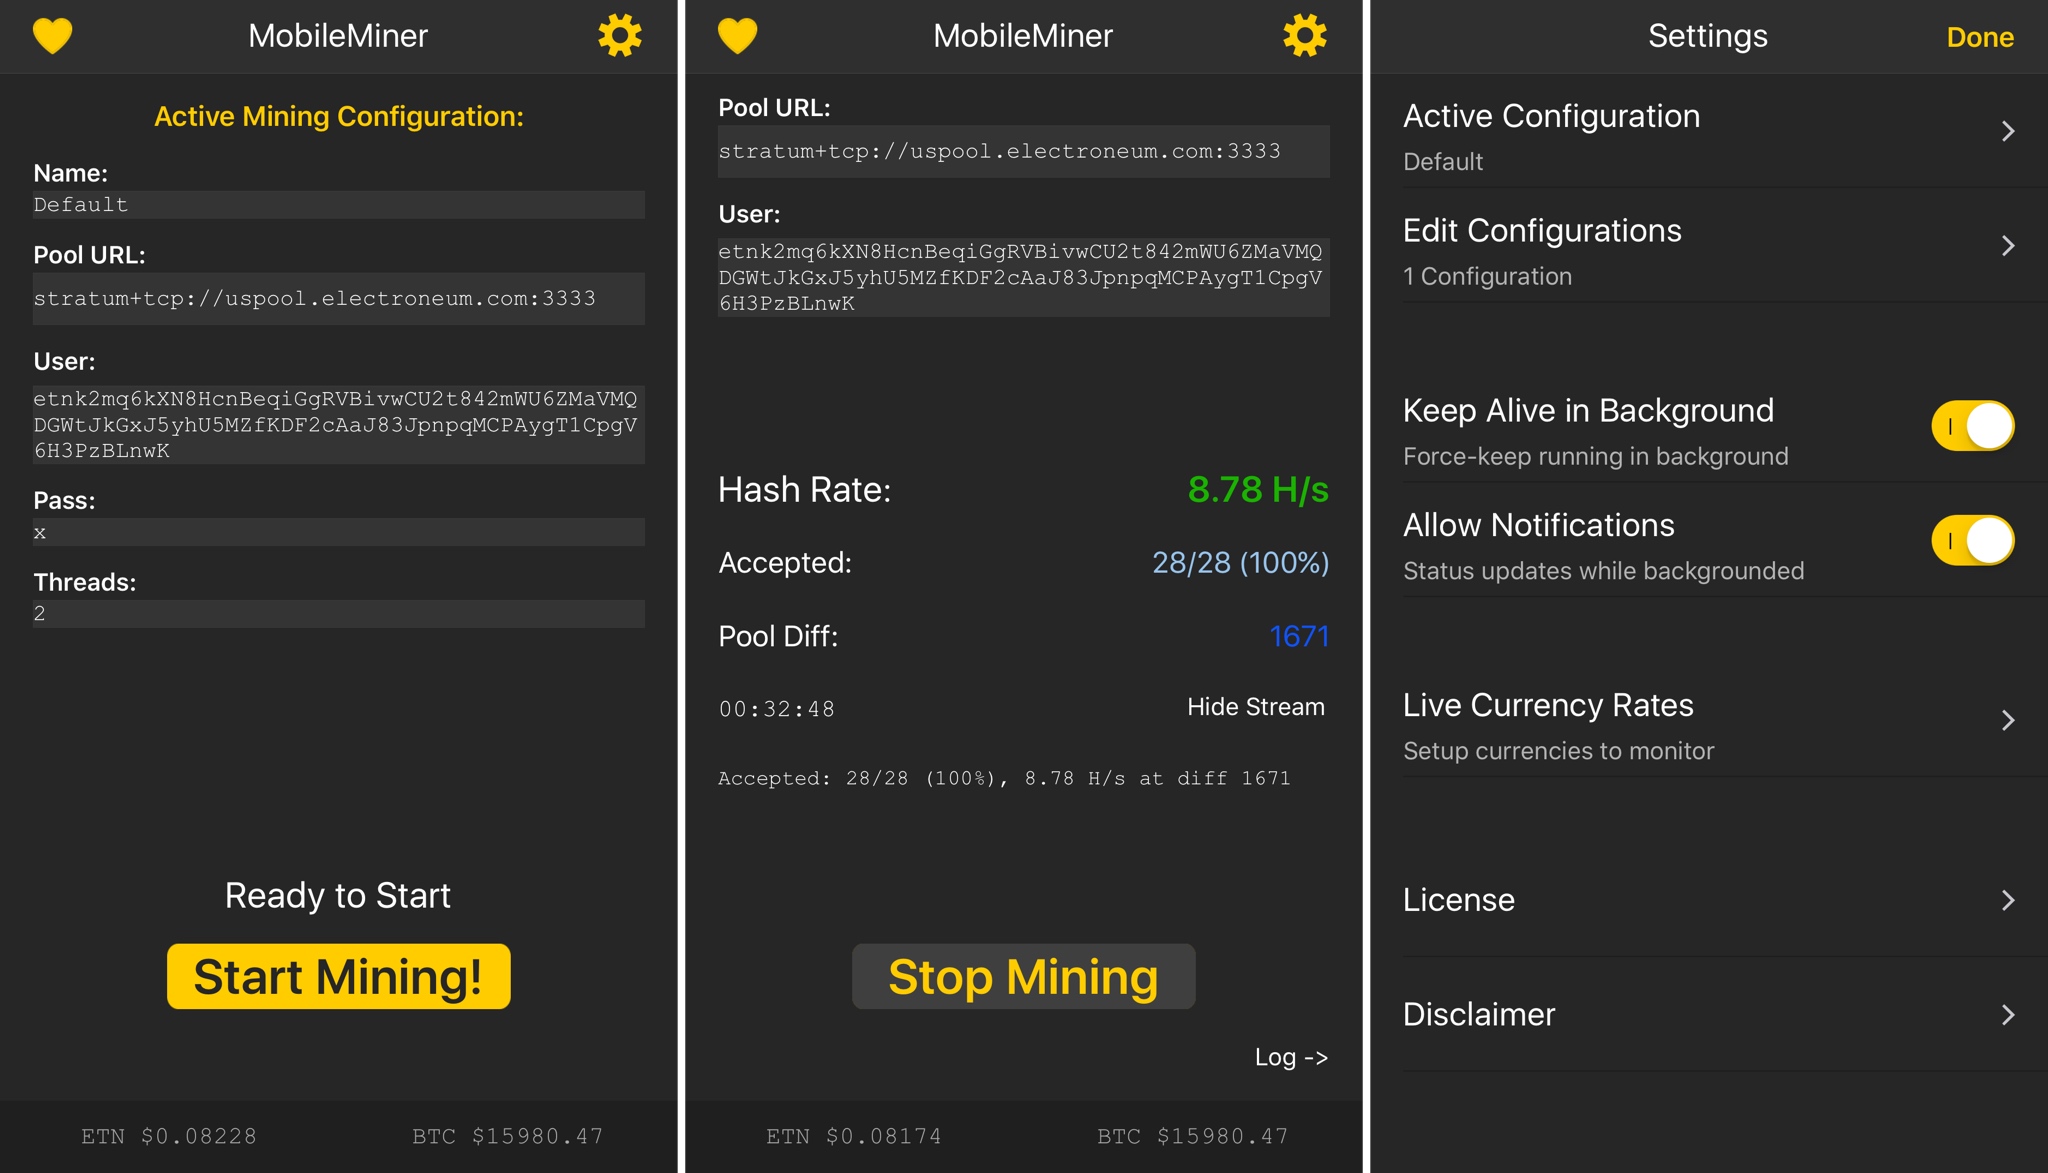 Must-Have-Tools für Bitcoin: Kryptowährung kaufen, Wallets und Mining